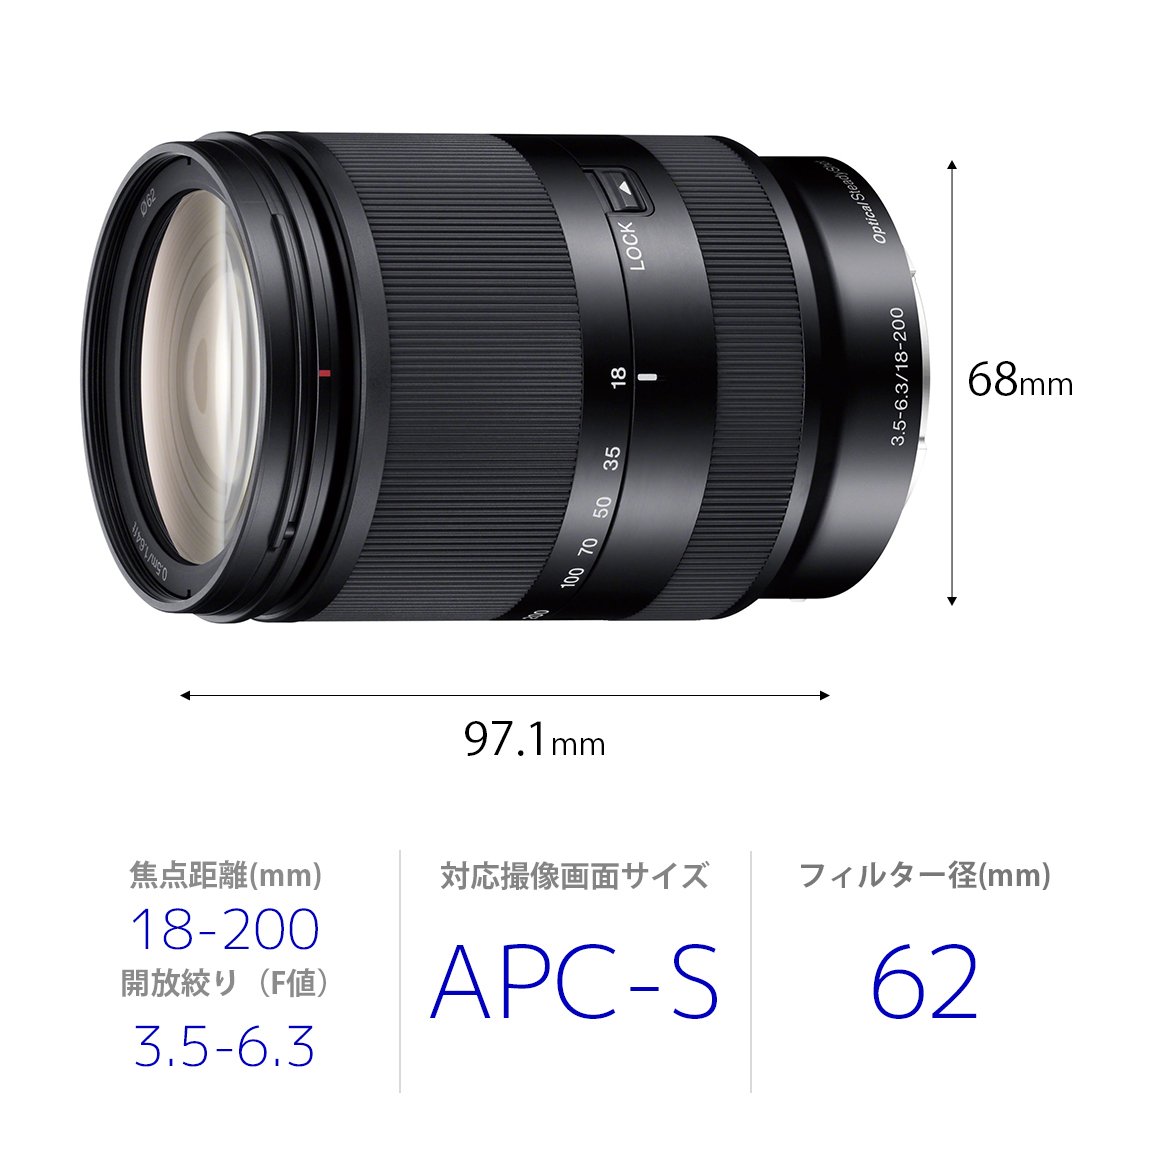 SONY SEL18200 F3.5-6.3 18-200mm OSS レンズ